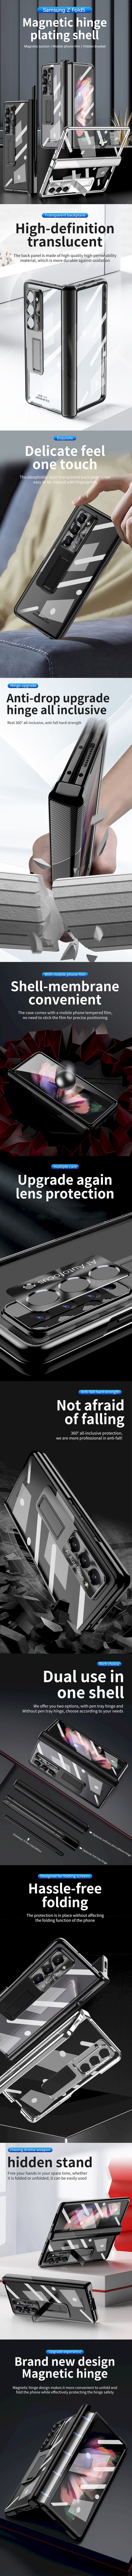 Samsung Galaxy Z Fold 3 5G 皮革保護殼(PLAIN) - 真皮荔枝紋折疊手機殼手機套保護套背蓋支架皮套保護殼